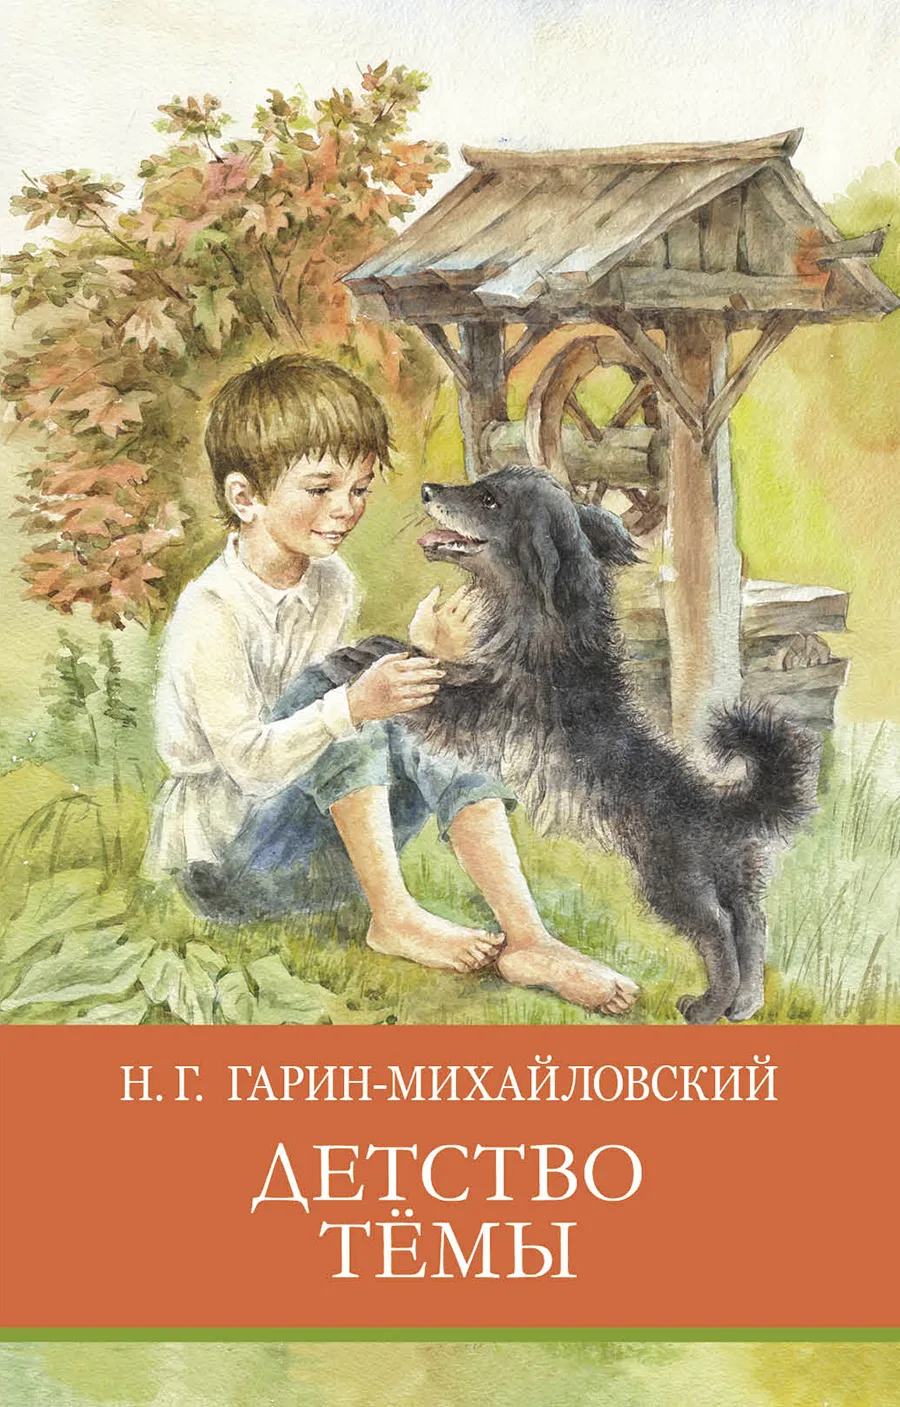 Книга Гарина Михайловского детство темы